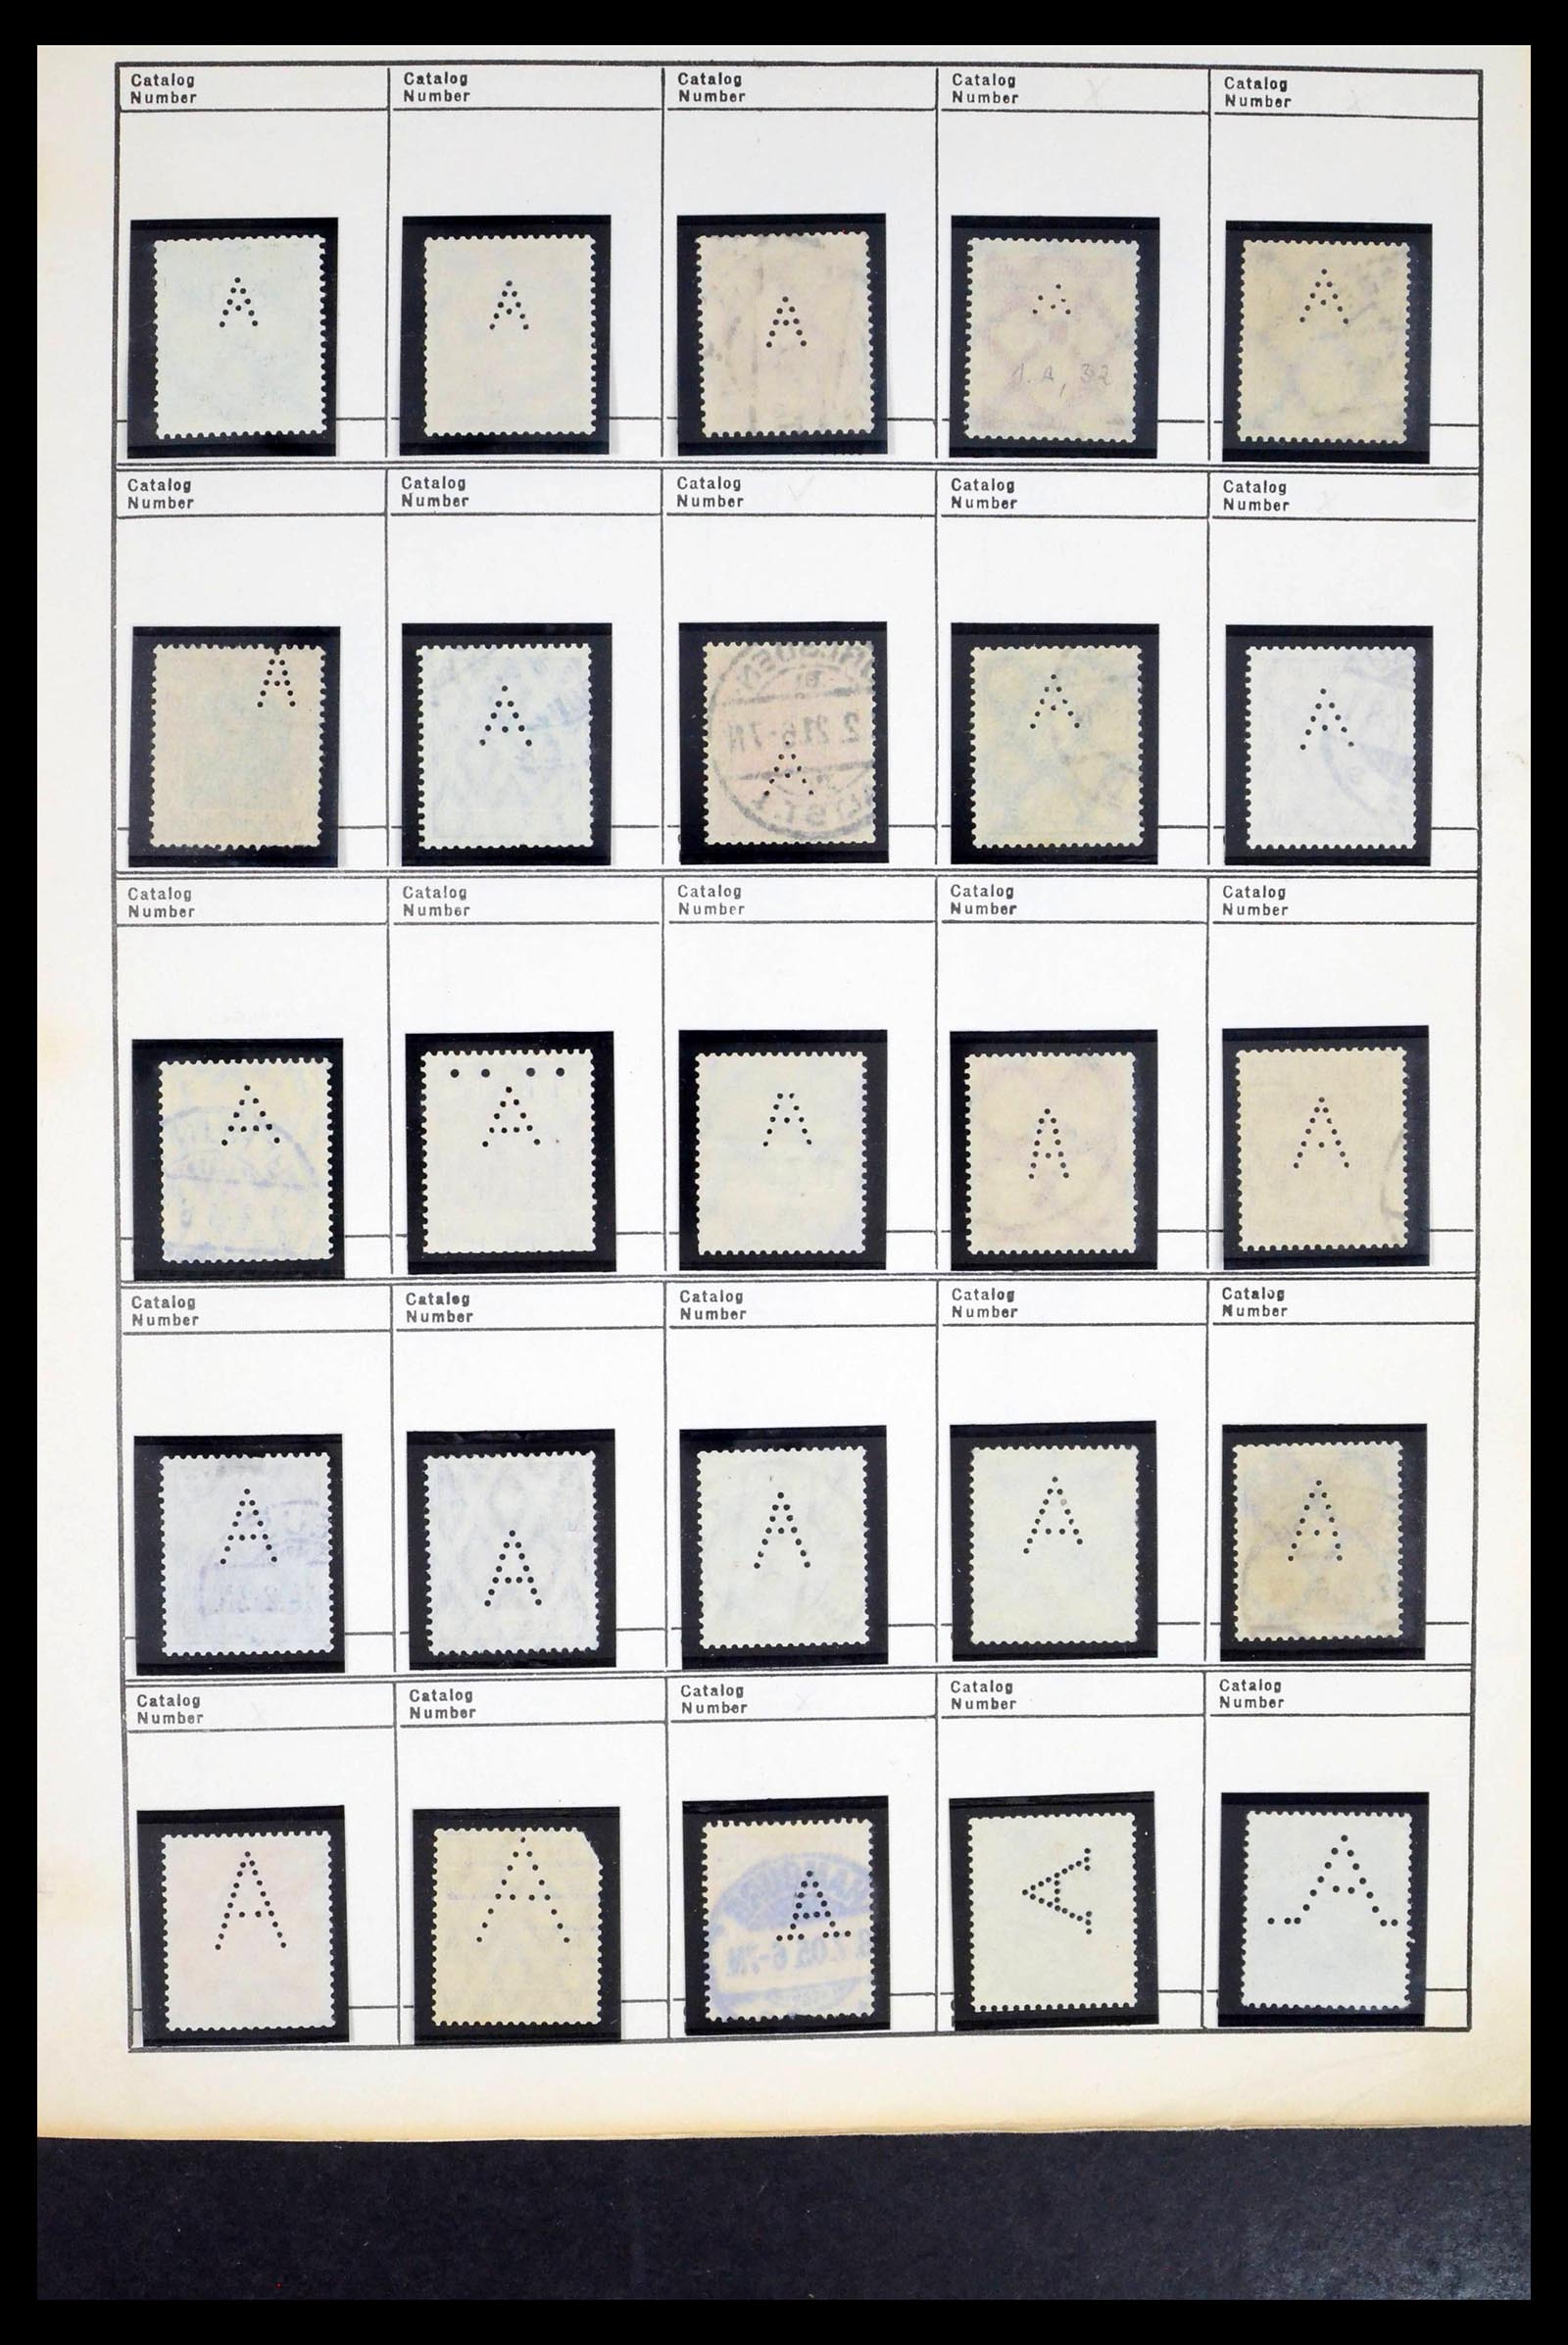 39480 0002 - Stamp collection 39480 German Reich perfins 1880-1955.